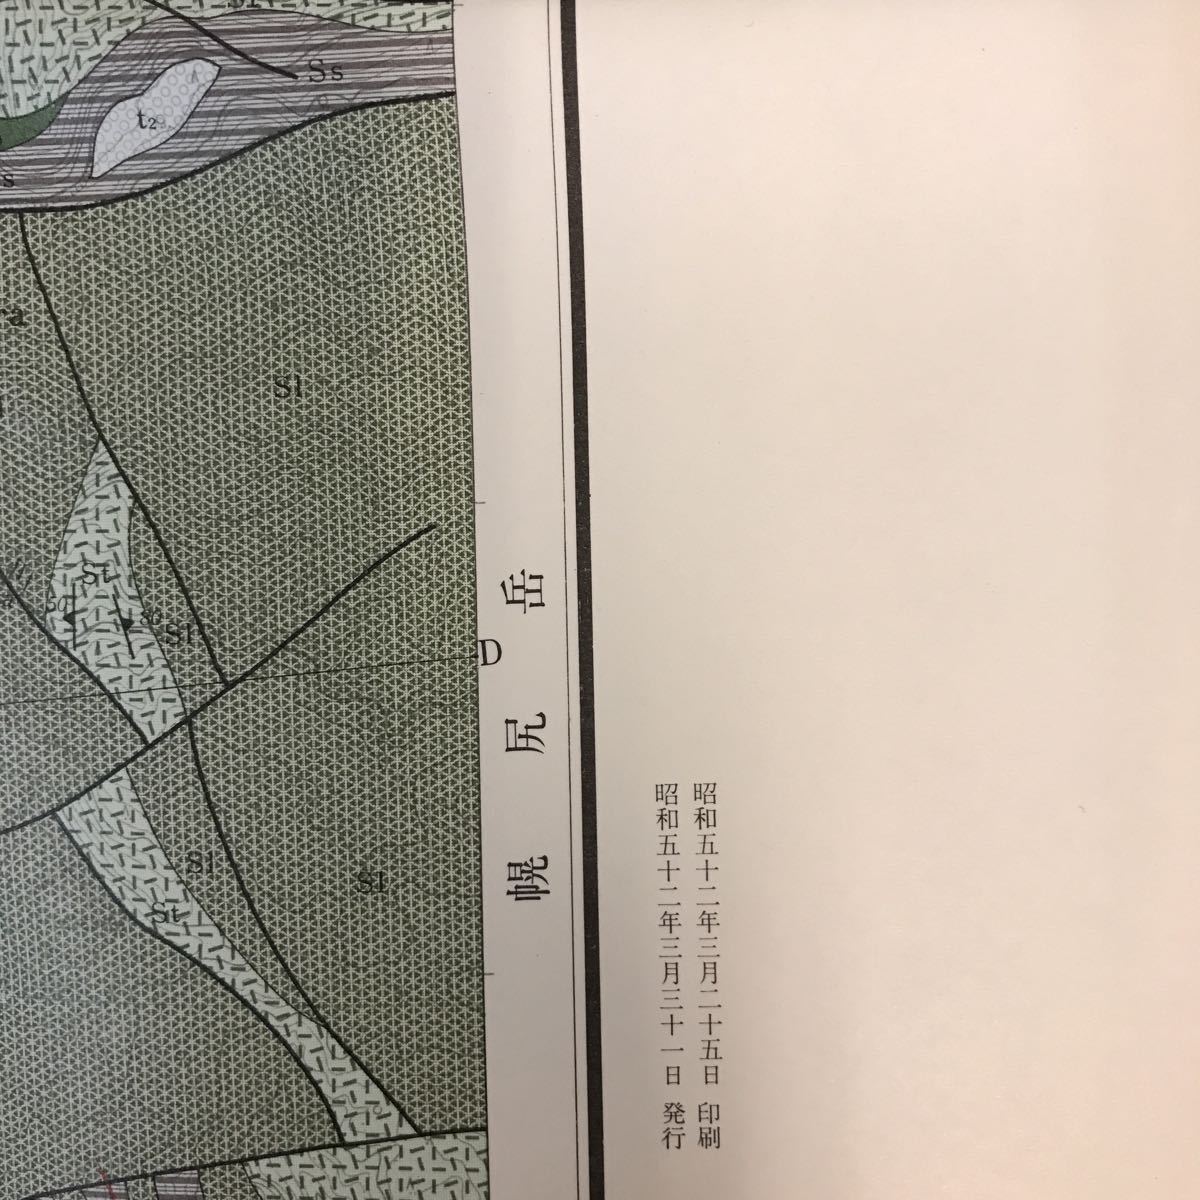 A60-108 5 десять тысяч минут. 1 земля качество map ширина инструкция скала ..( Sapporo один no. 45 номер ) Hokkaido . земля внизу . источник исследование место Showa 53 год 